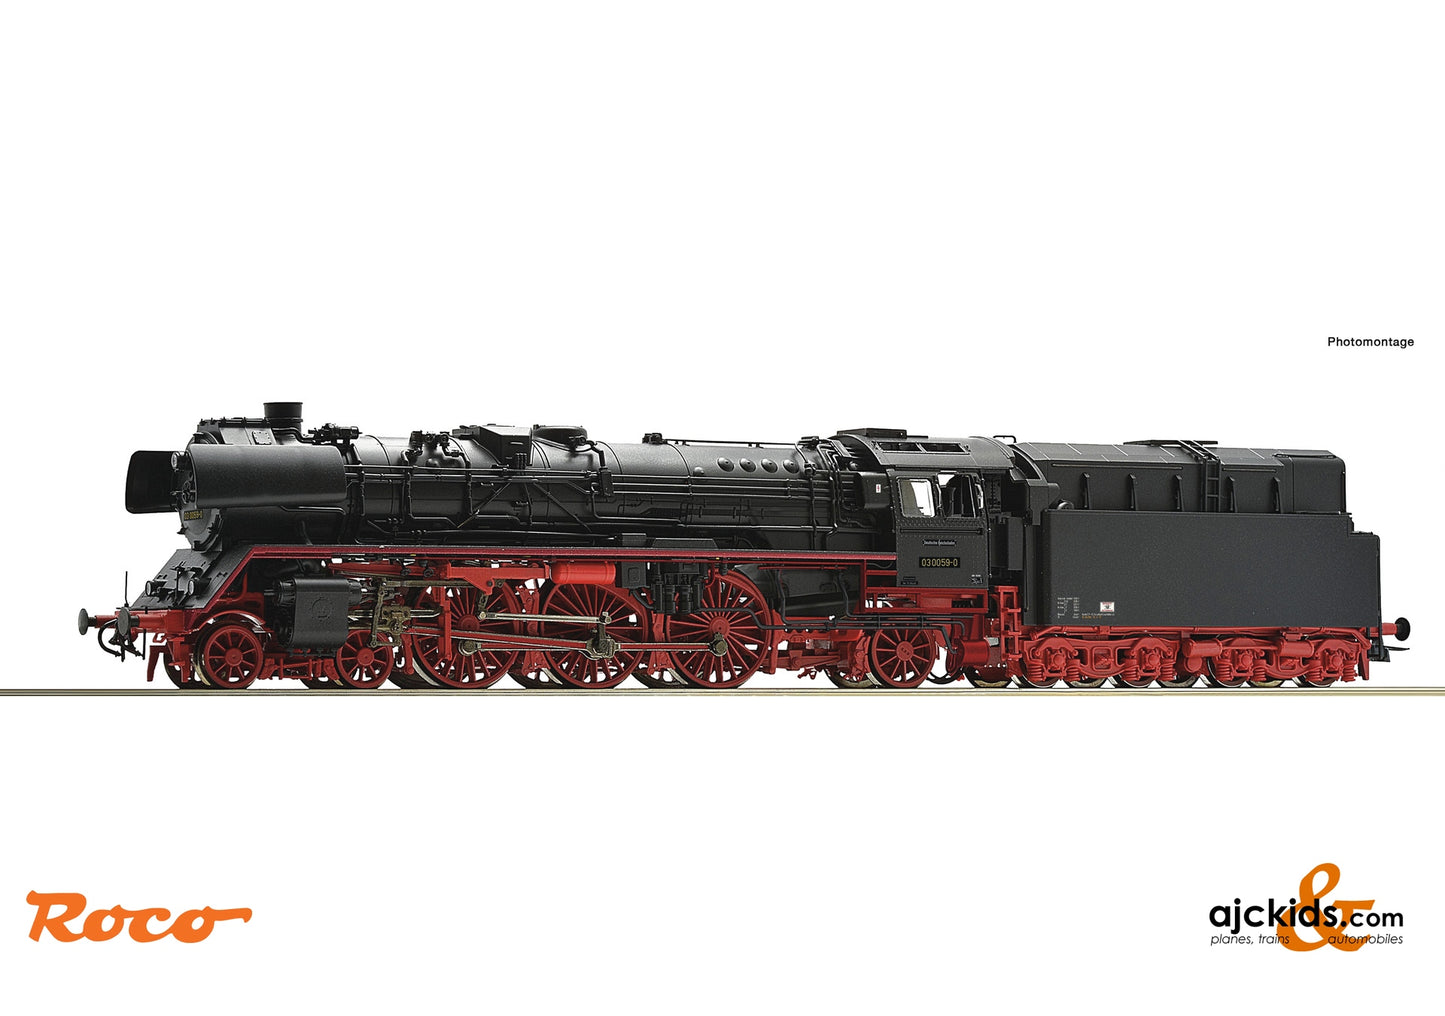 Roco 70068 - Steam locomotive 03 0059-0, DR at Ajckids.com